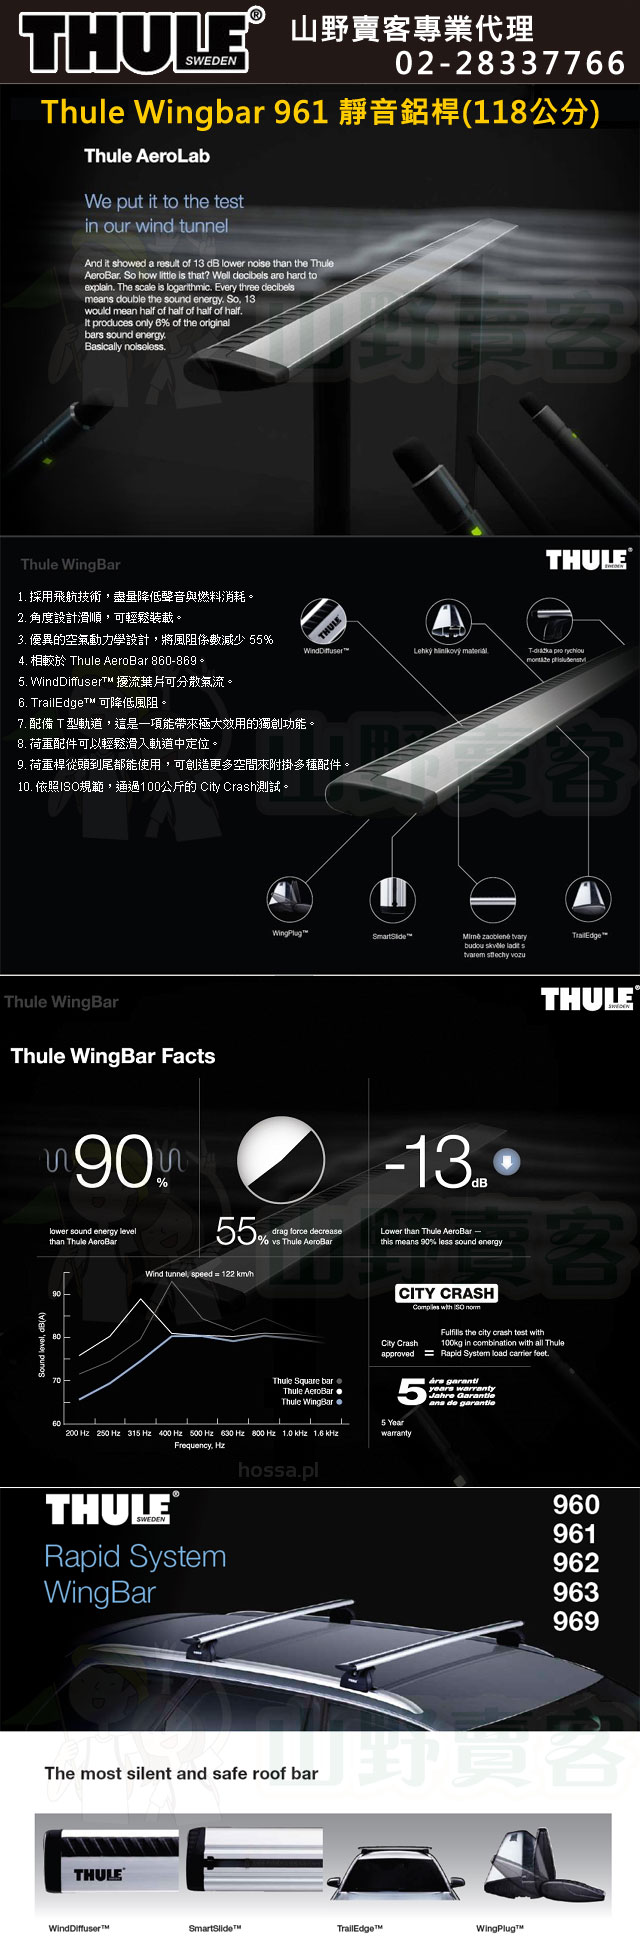 都樂 Thule 960 WingBar 靜音鋁桿 (118cm)